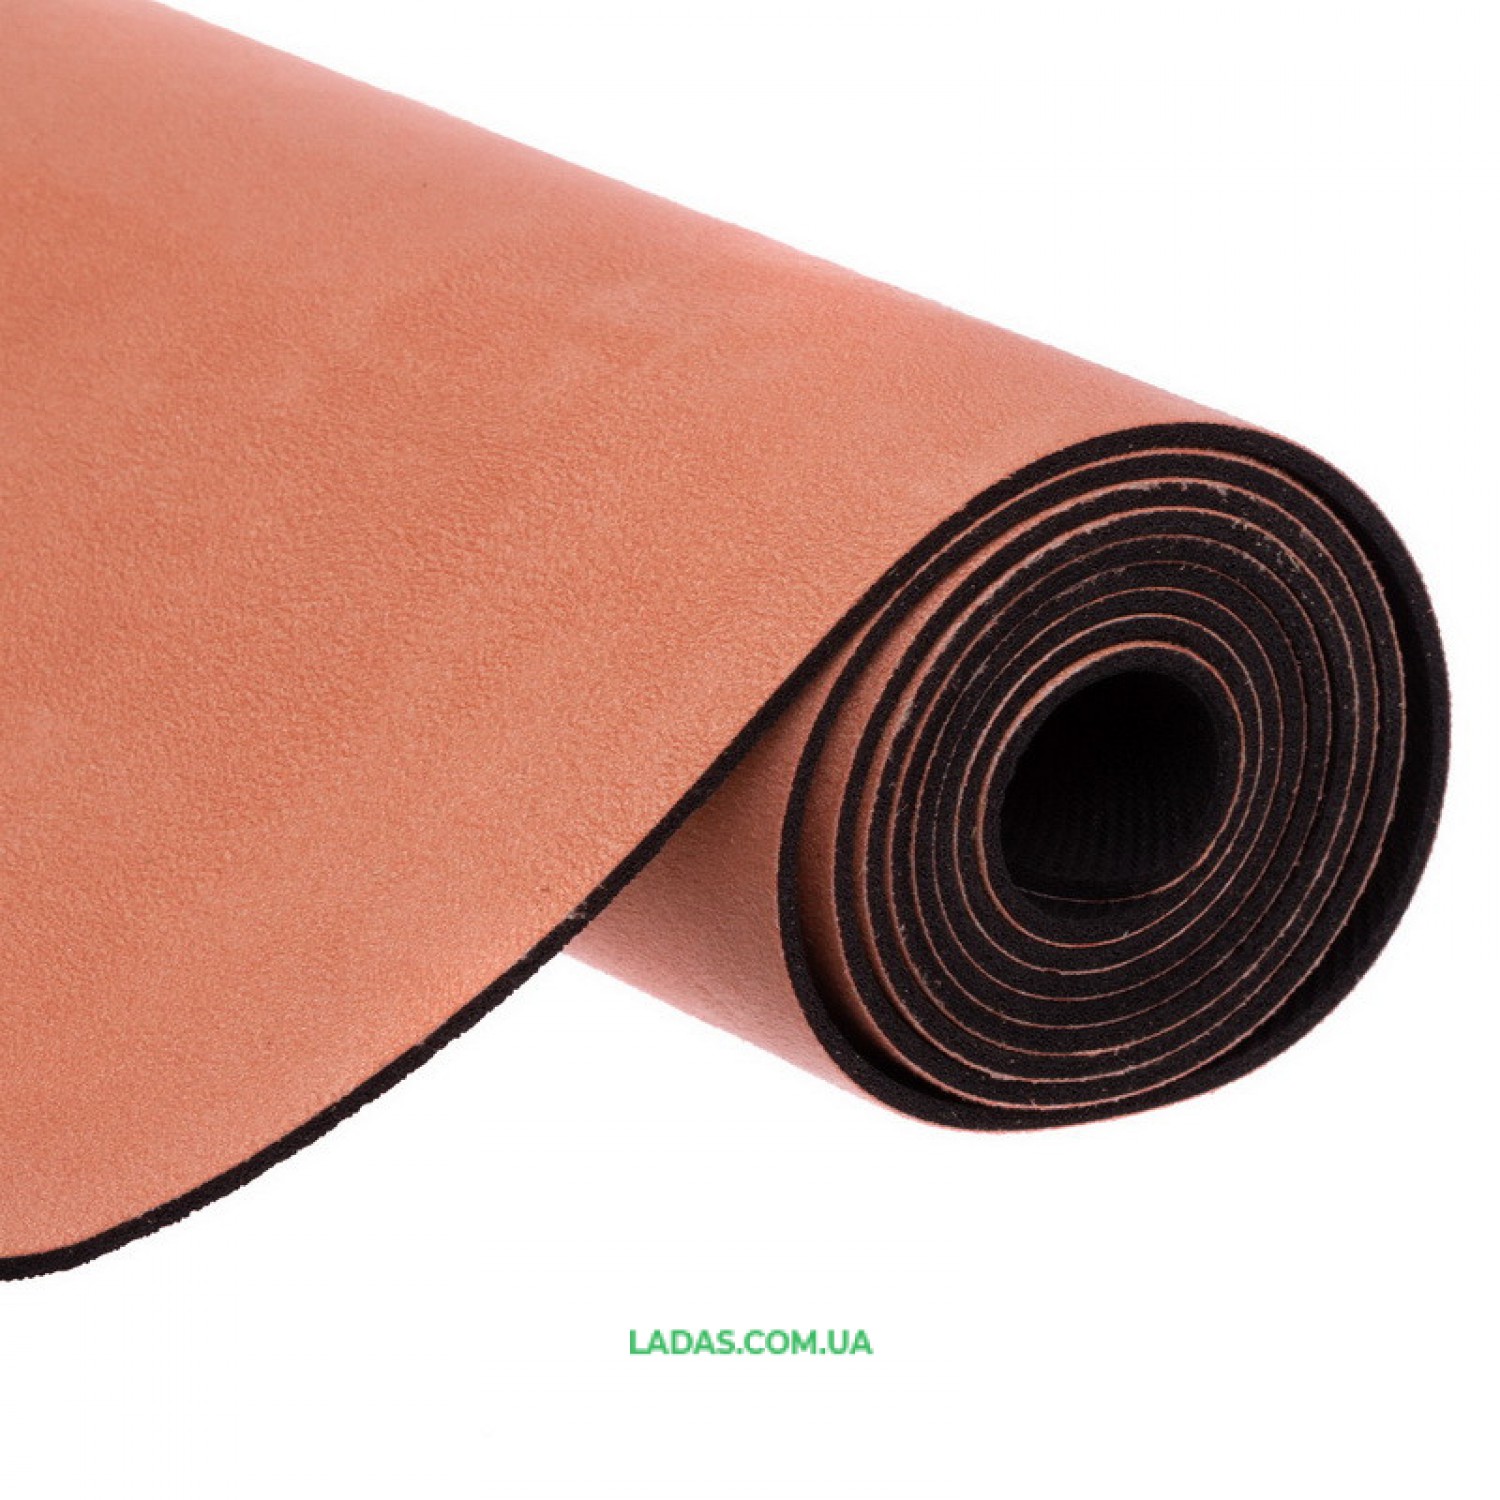 Коврик для йоги Замшевый каучуковый двухслойный Record (размер 1,83мx0,61мx3мм, персиковый)